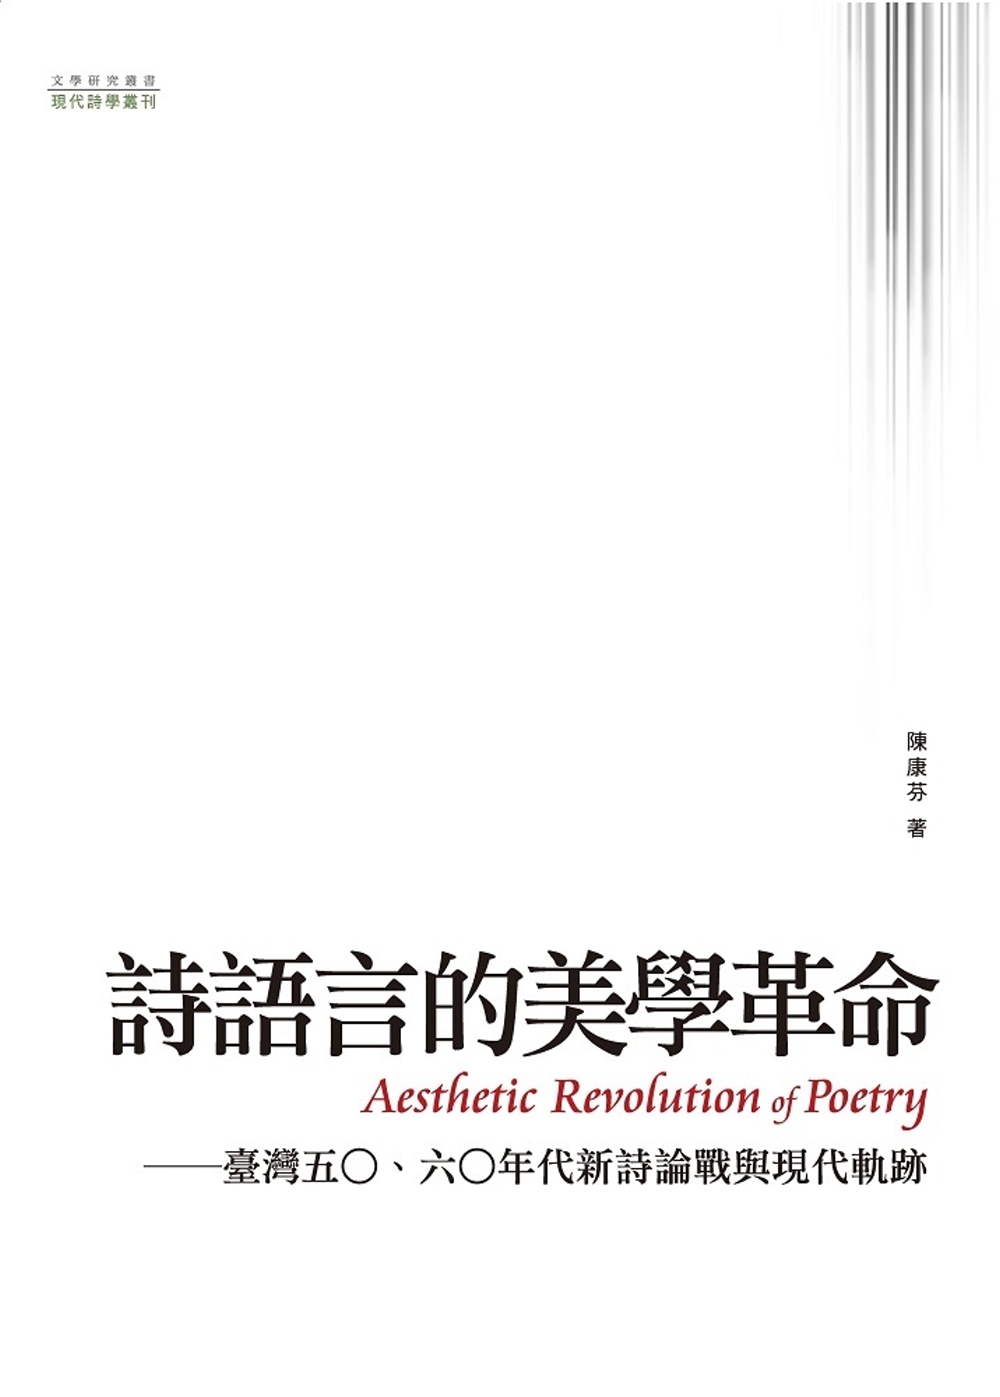 詩語言的美學革命：臺灣五○、六○年代新詩論戰與現代軌跡